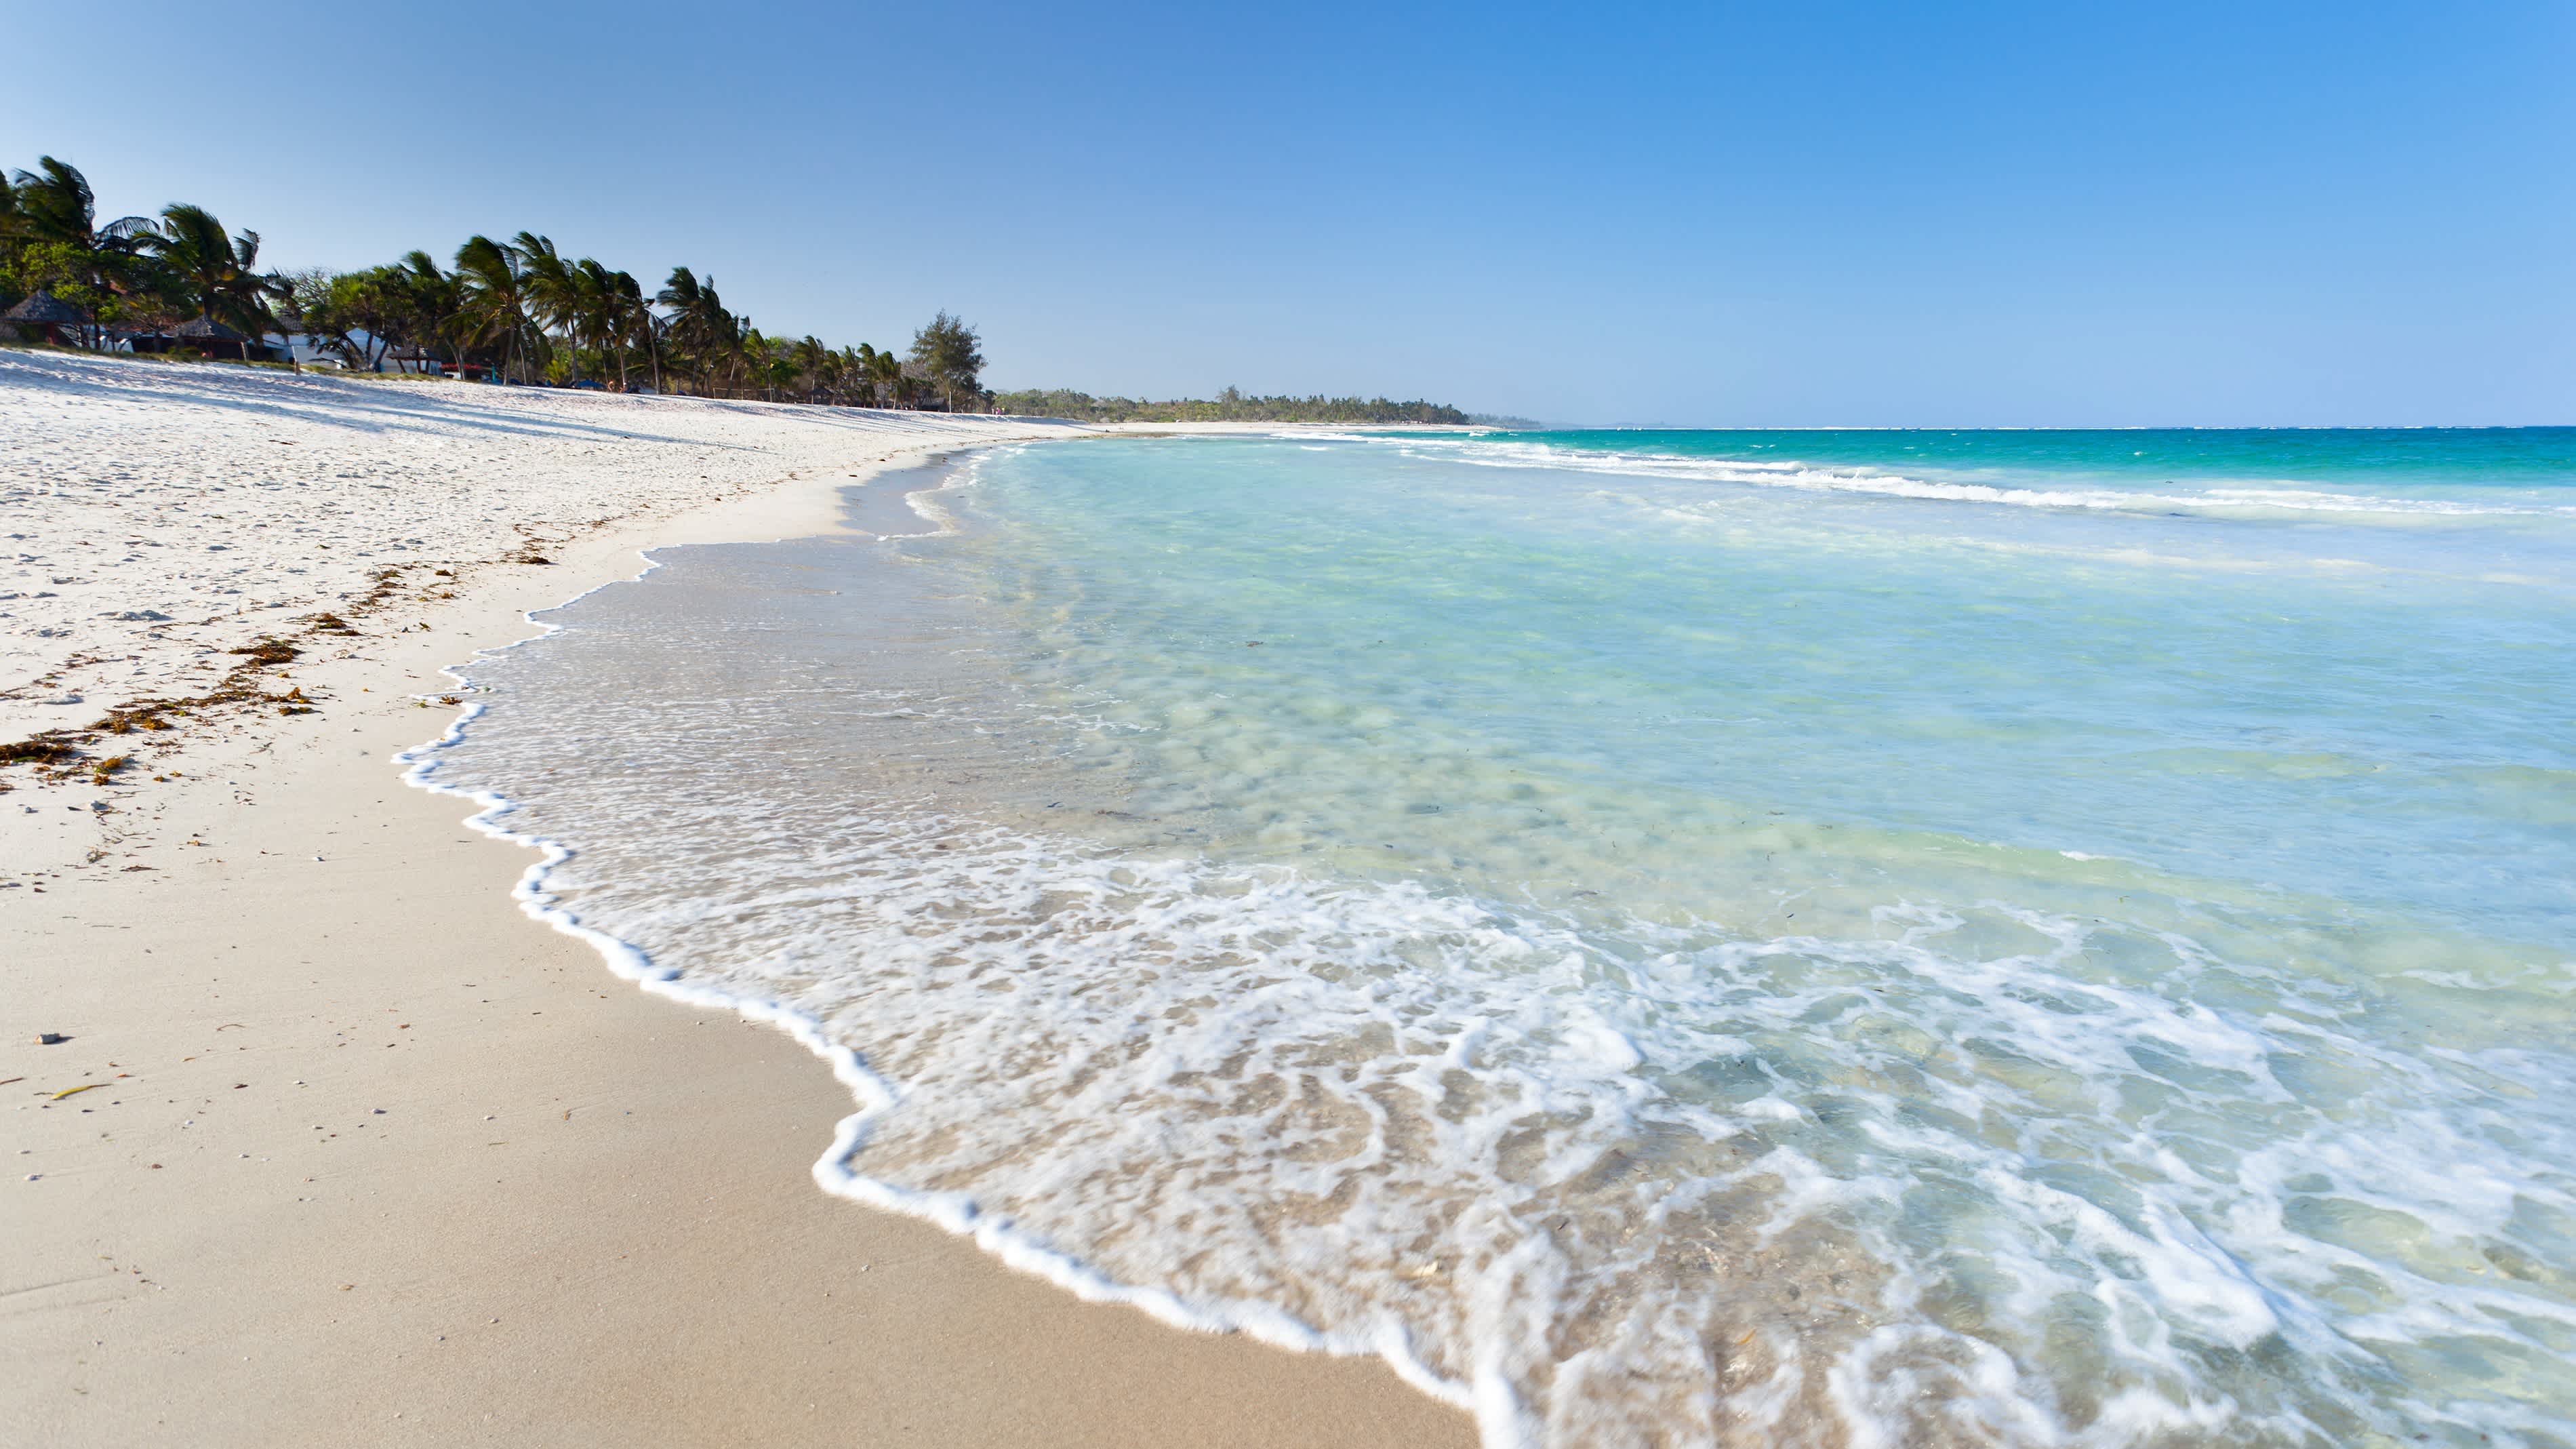 Der traumhafte Strand Diani Beach bei Ukunda in Kenia bei Sonne satt und türkisblauem Meer mit Palmen im Hintergrund.